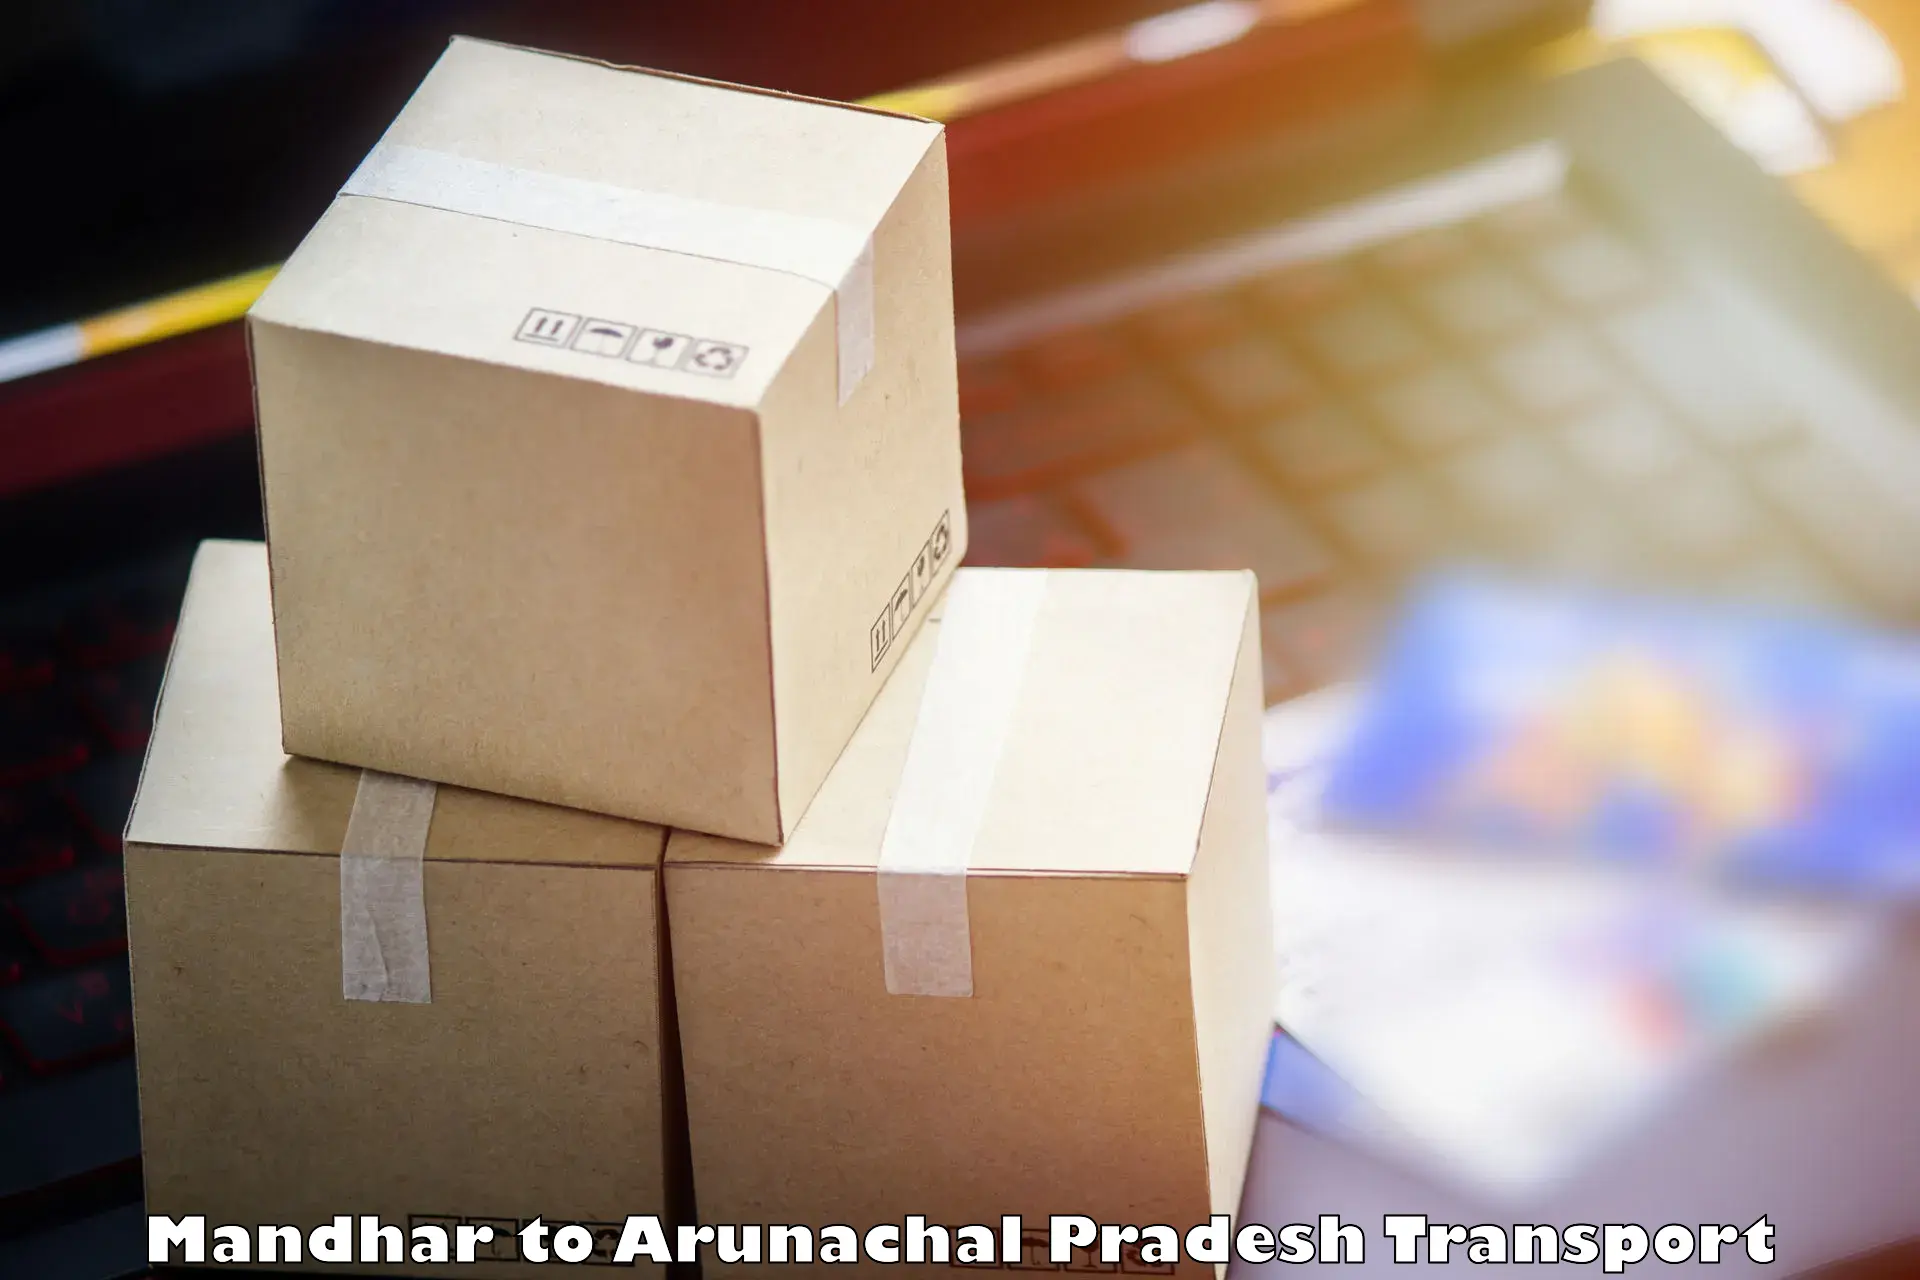 Road transport online services Mandhar to Arunachal Pradesh